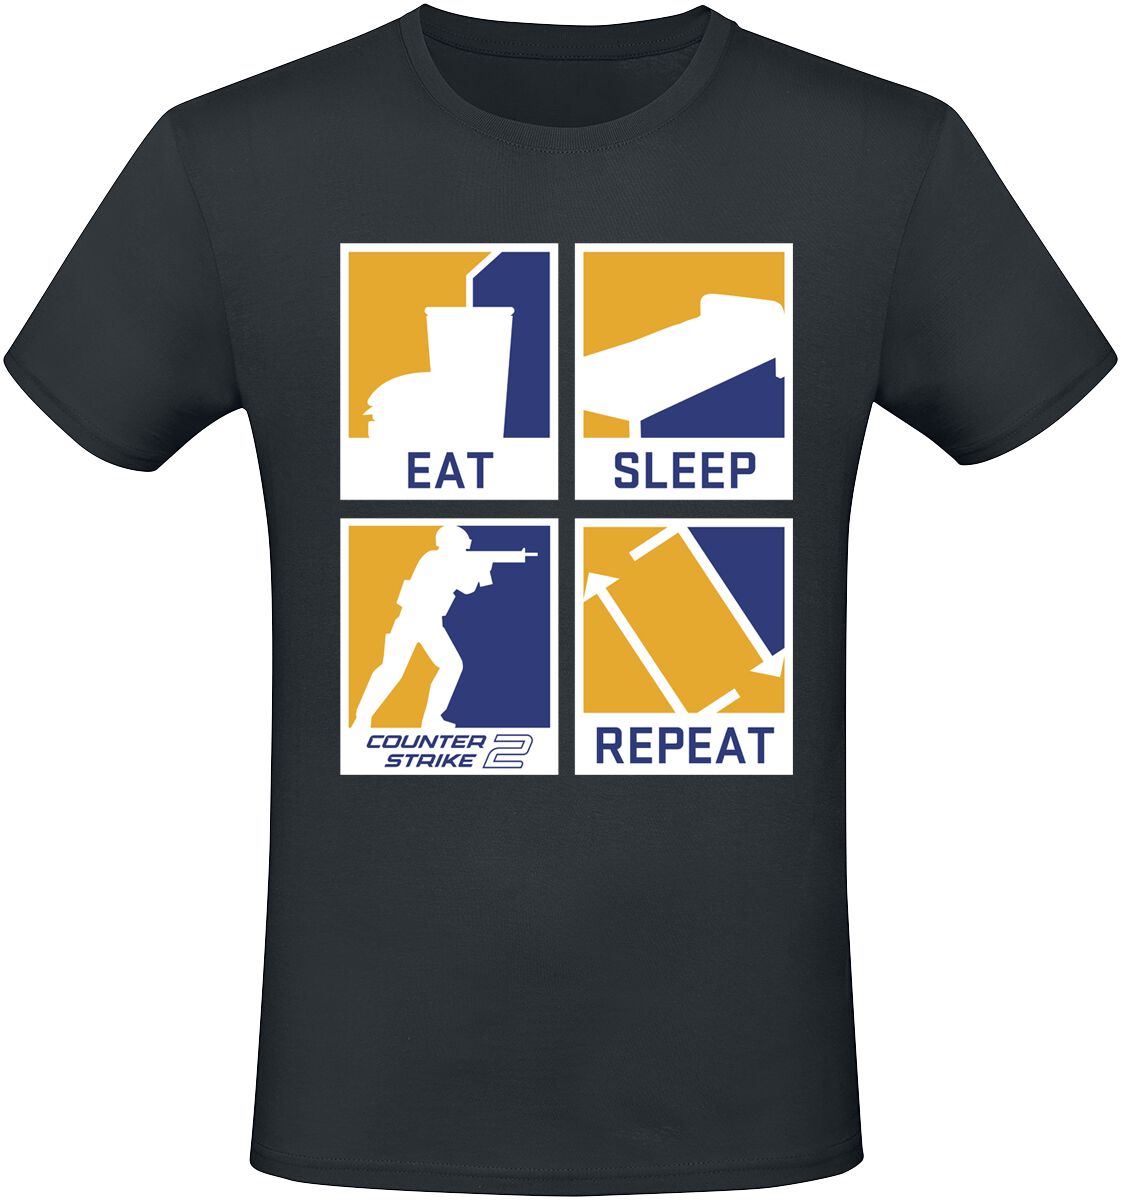 Counter-Strike - Gaming T-Shirt - 2 - Eat Sleep Repeat - S bis XXL - für Männer - Größe M - schwarz  - EMP exklusives Merchandise!